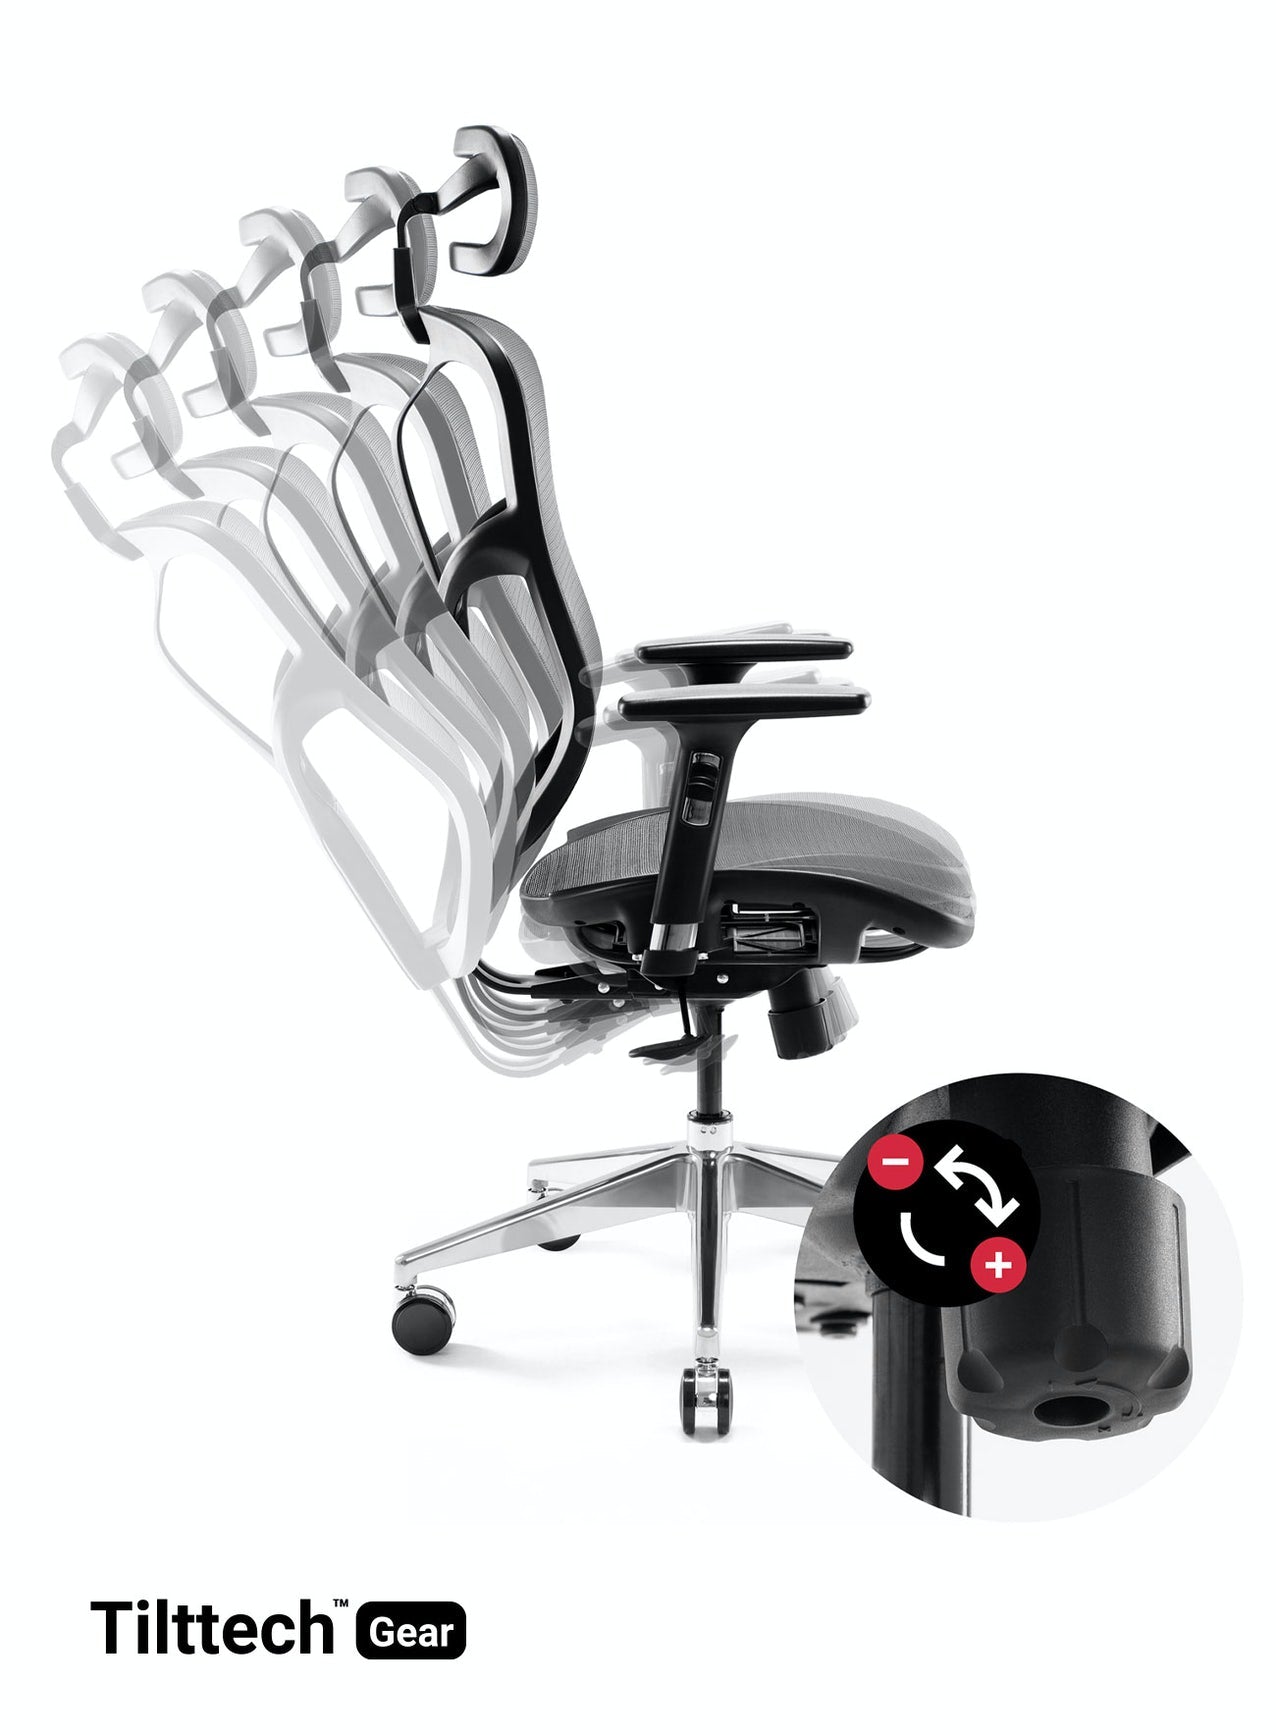 Scaun ergonomic multifunctional VE 5902 Negru-Gri, sprijin gât, spătar/cotiere reglabil